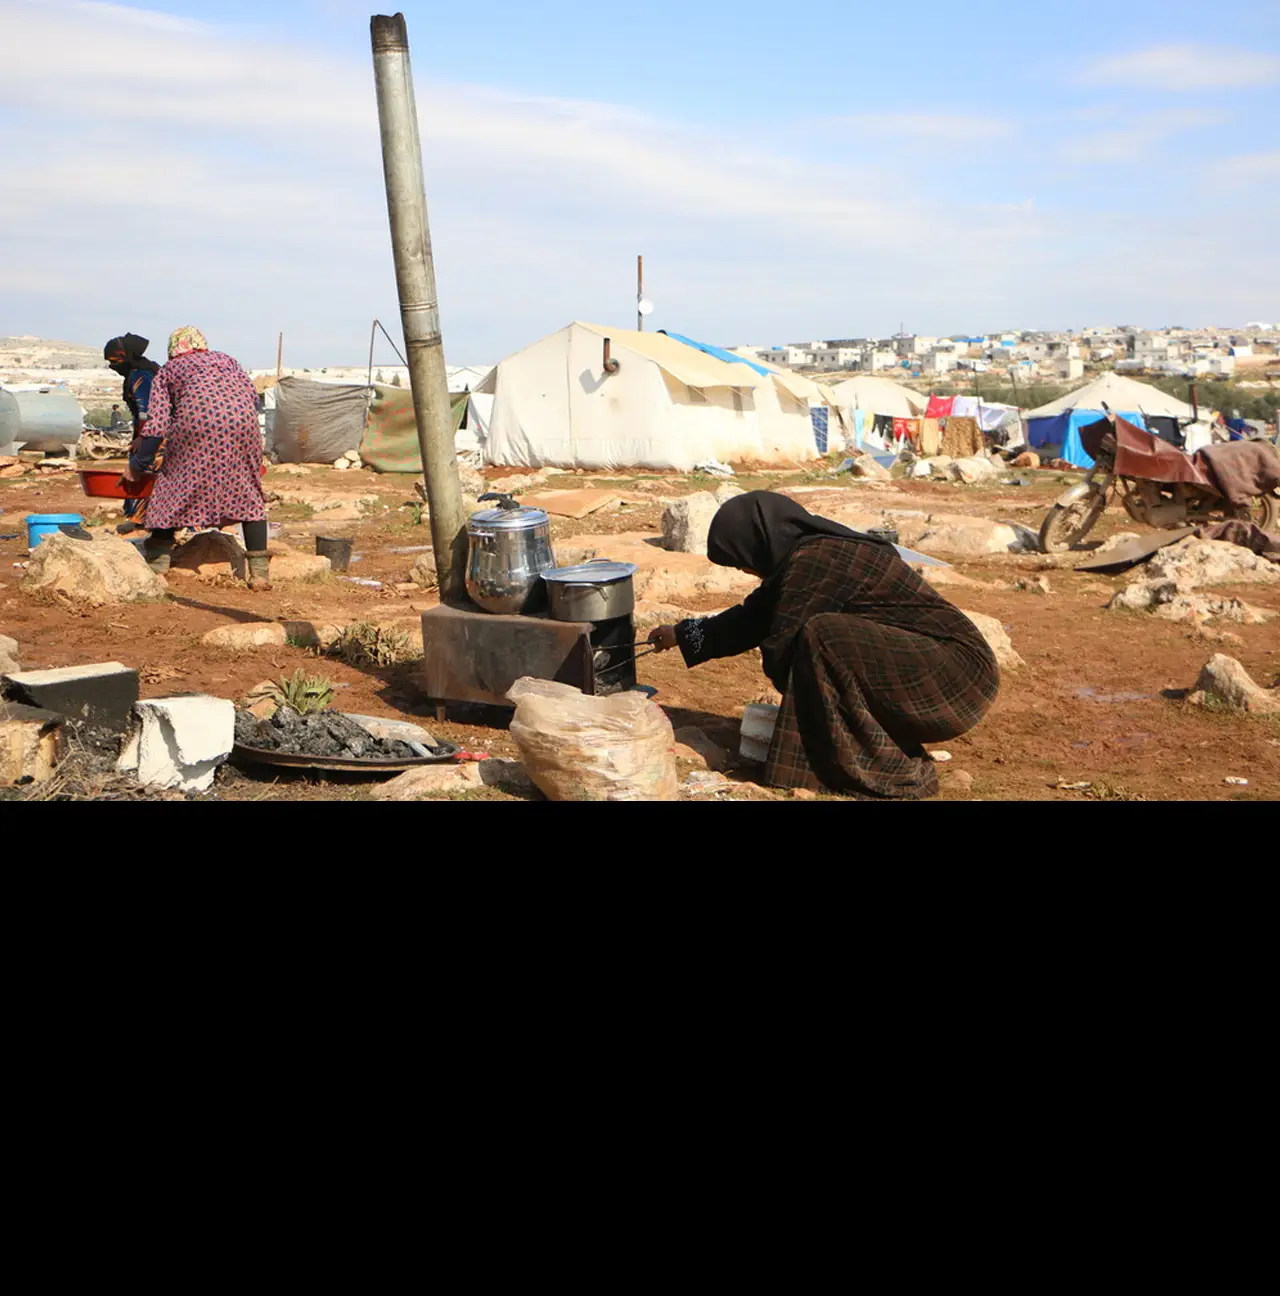 Campo de Deir Hassan, na província de Idlib. Vivem ali cerca de 120 mil pessoas deslocadas, segundo números da organização não-governamental Médicos Sem Fronteiras